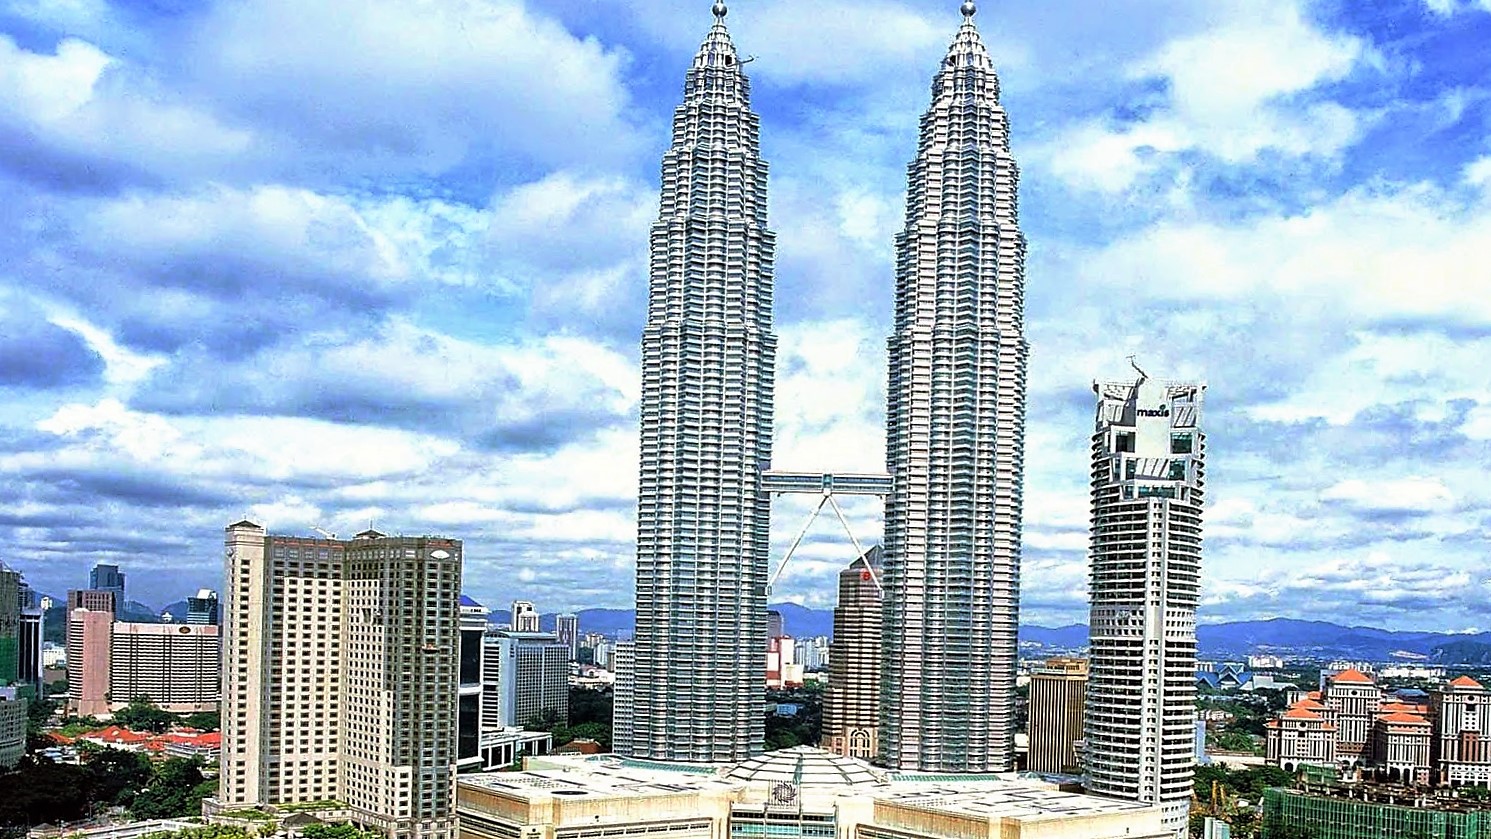 5-five-5: Petronas Twin Towers (Kuala Lumpur - Malaysia)